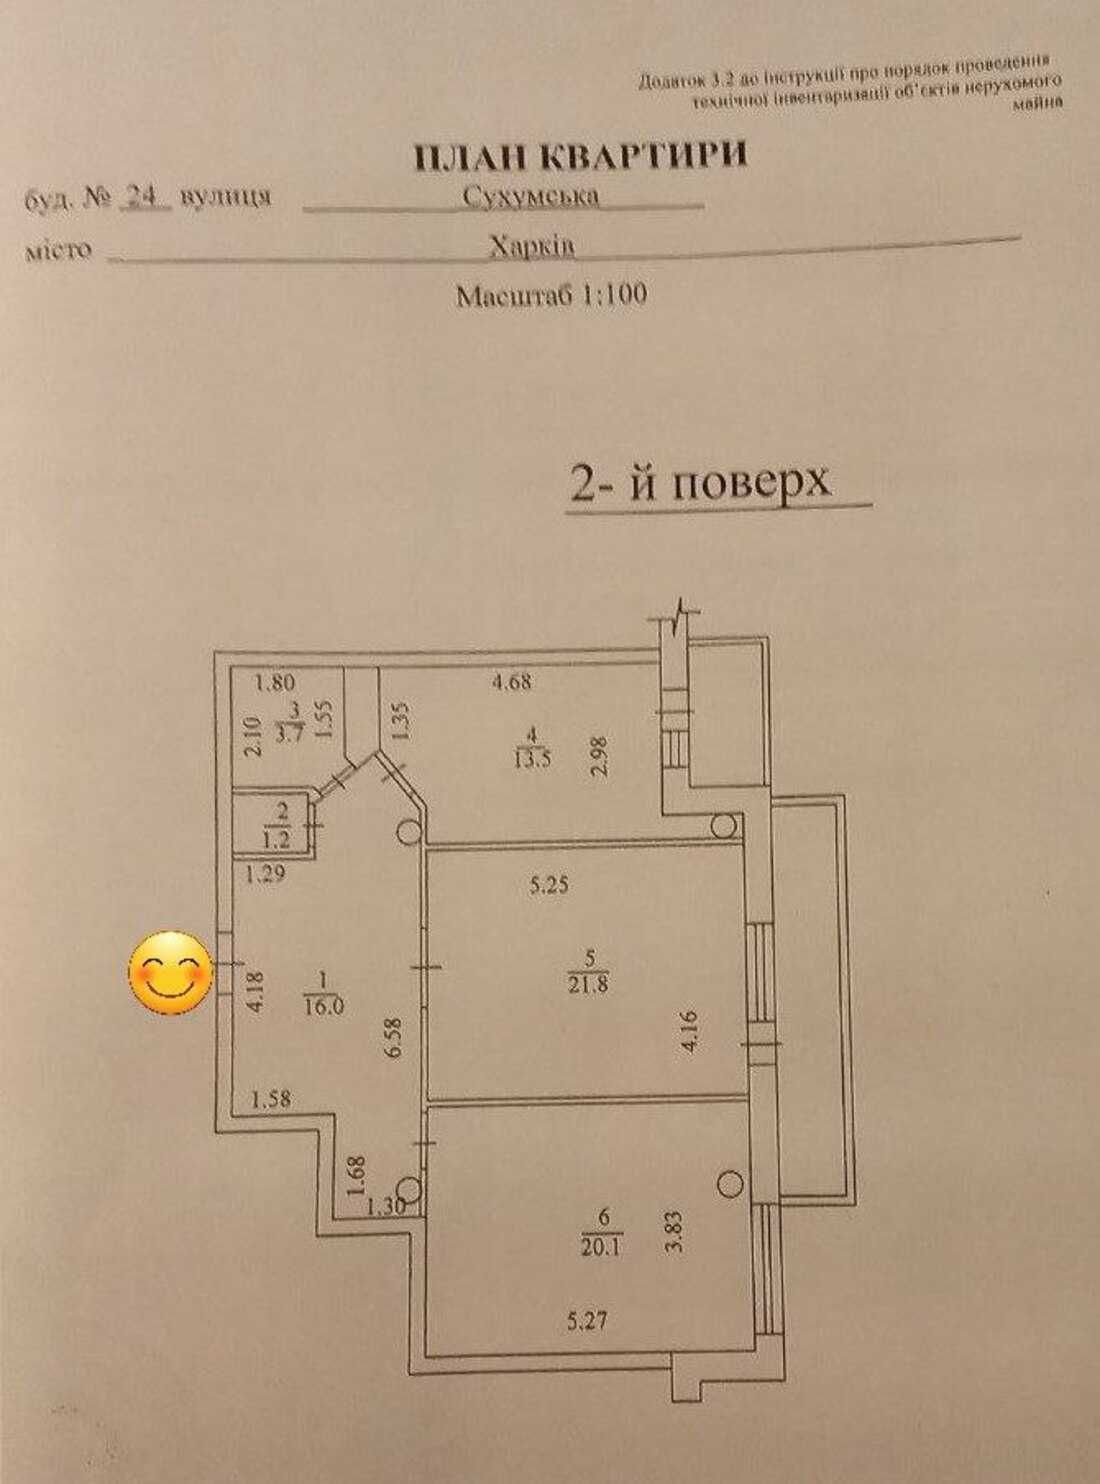 2-х комнатная квартира 80 м Новострой Ремонт Сухумская